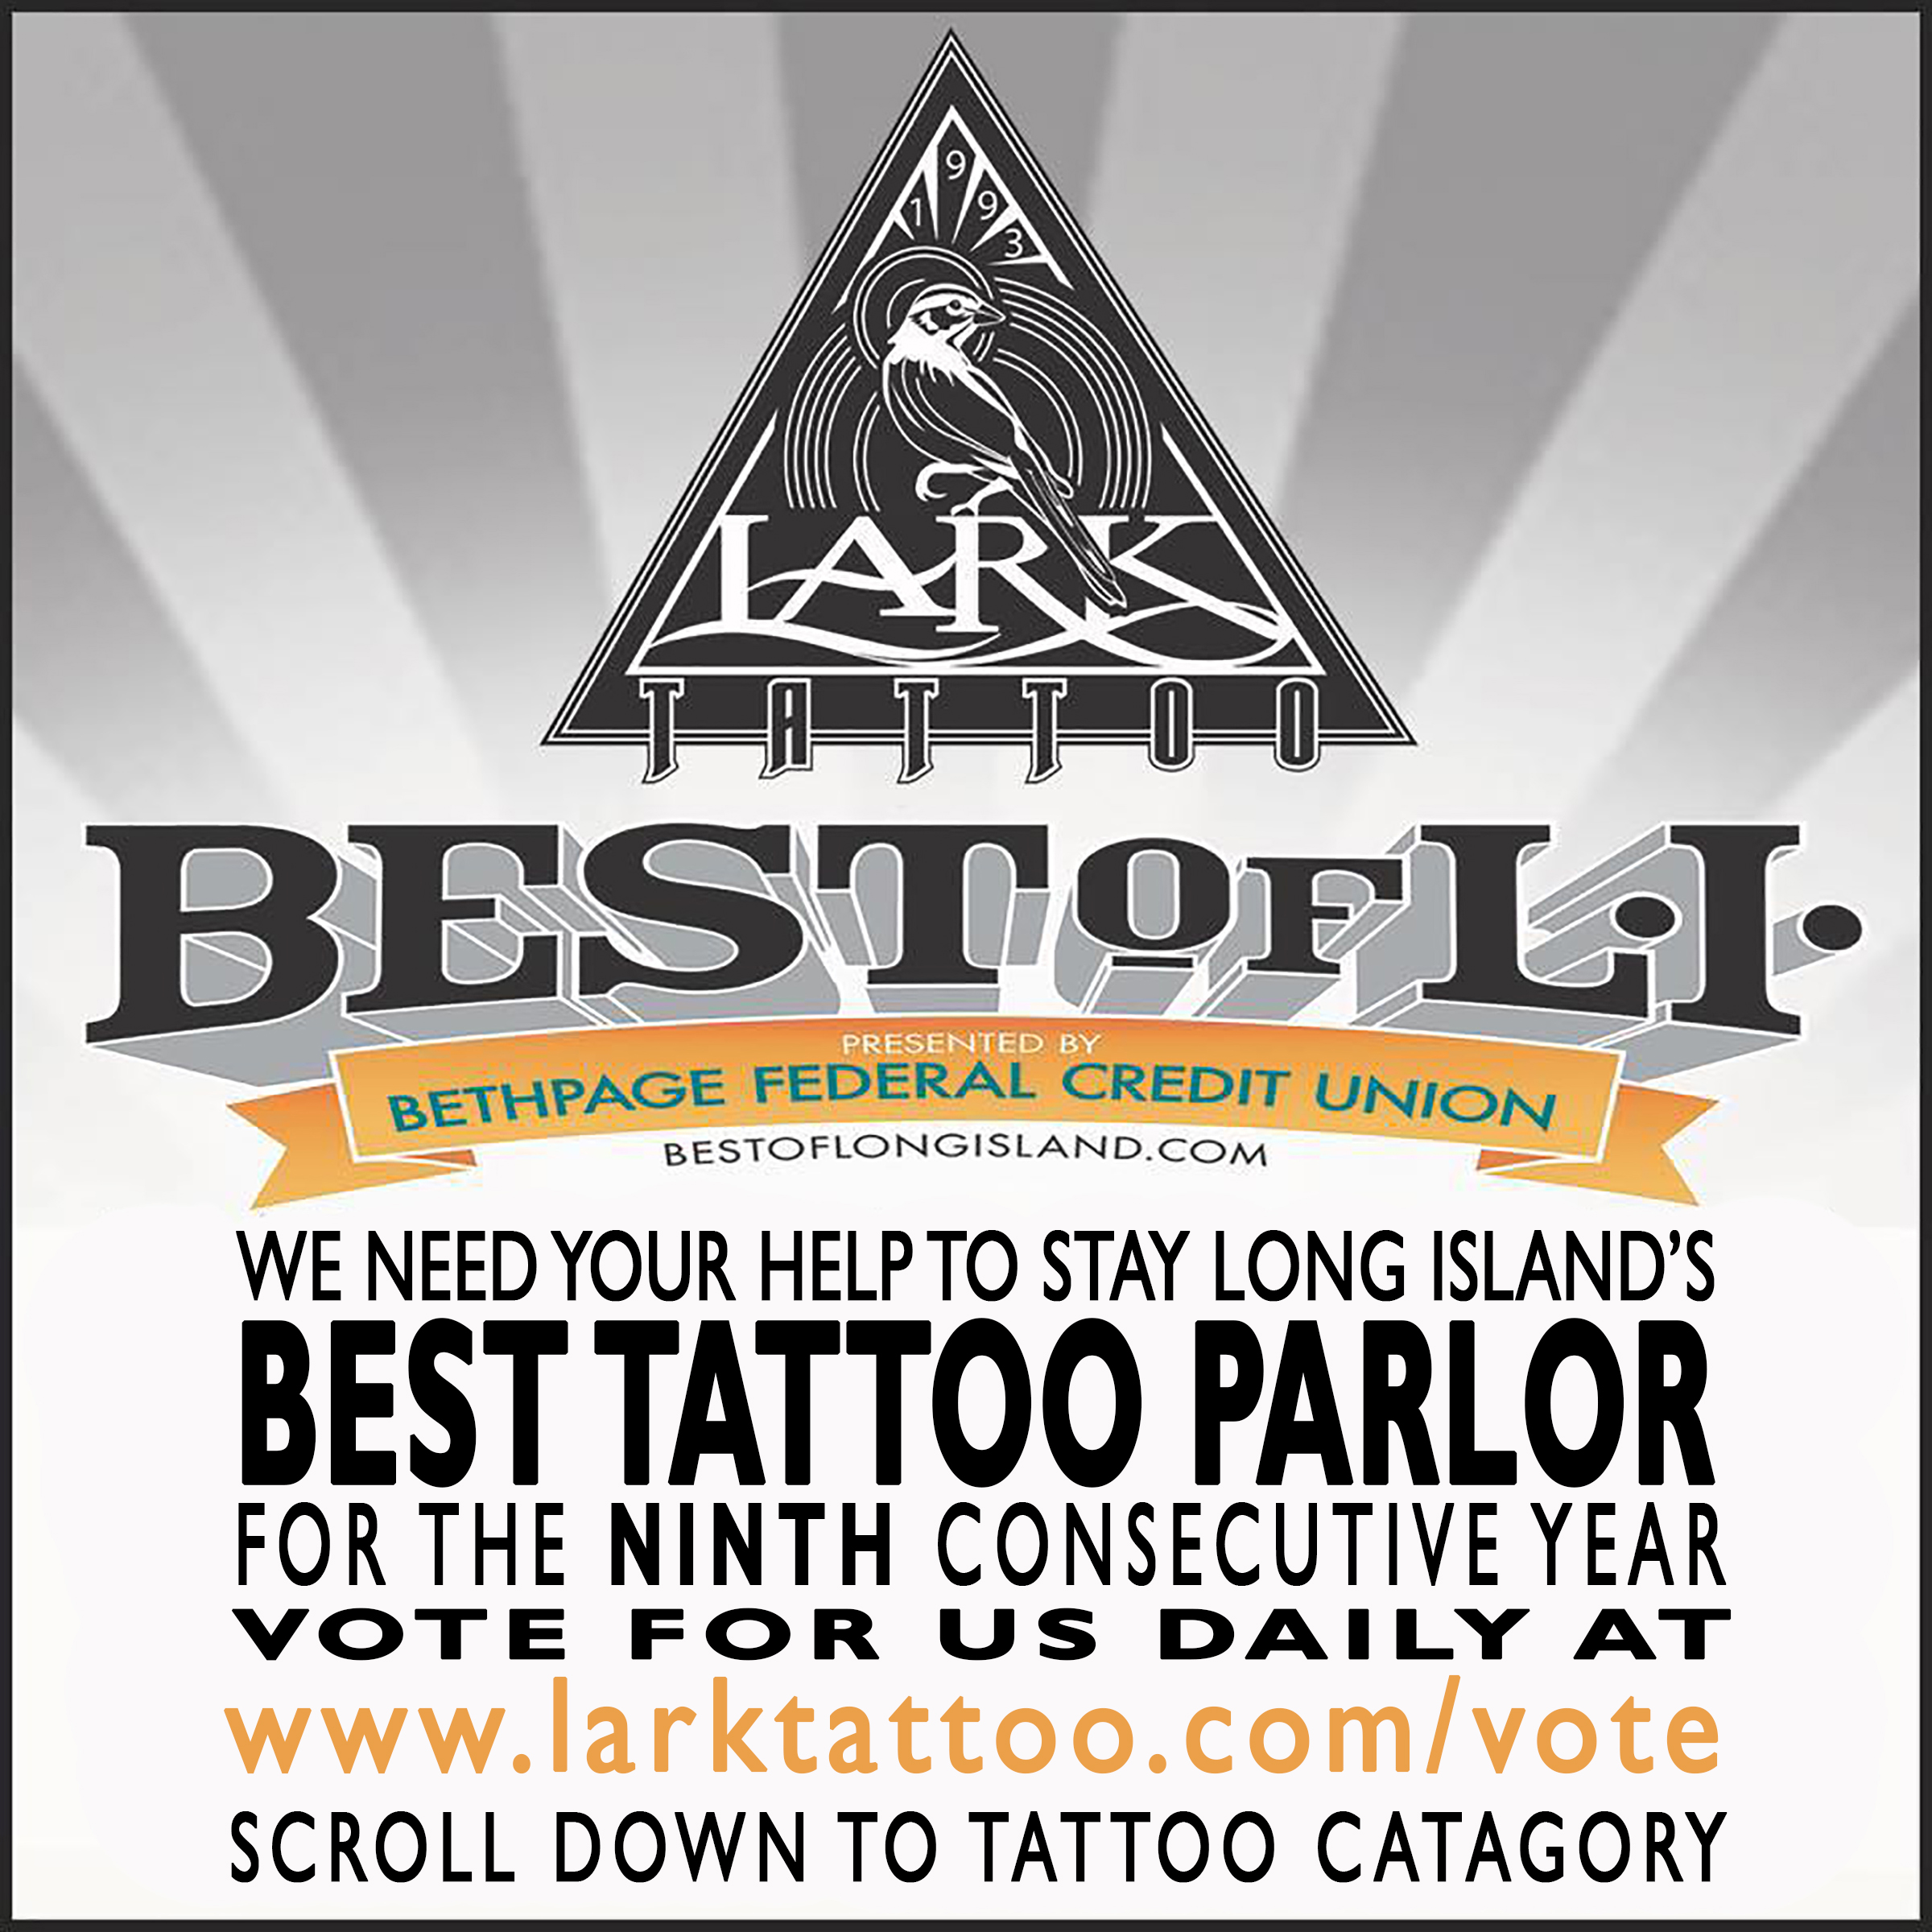 LarkTattoo, WeNeedYourHelp, Vote, Voting, VoteForUs, BestOfLongIsland, BestOfLI, BoLI, Tattoo, Tattoos, Tattooist, Tattooed, TattooParlor, BestTattooParlor, LongIslandBestTattooParlor, LongIsland, NY, NewYork, Westbury, TattooShop, BestTattooShop